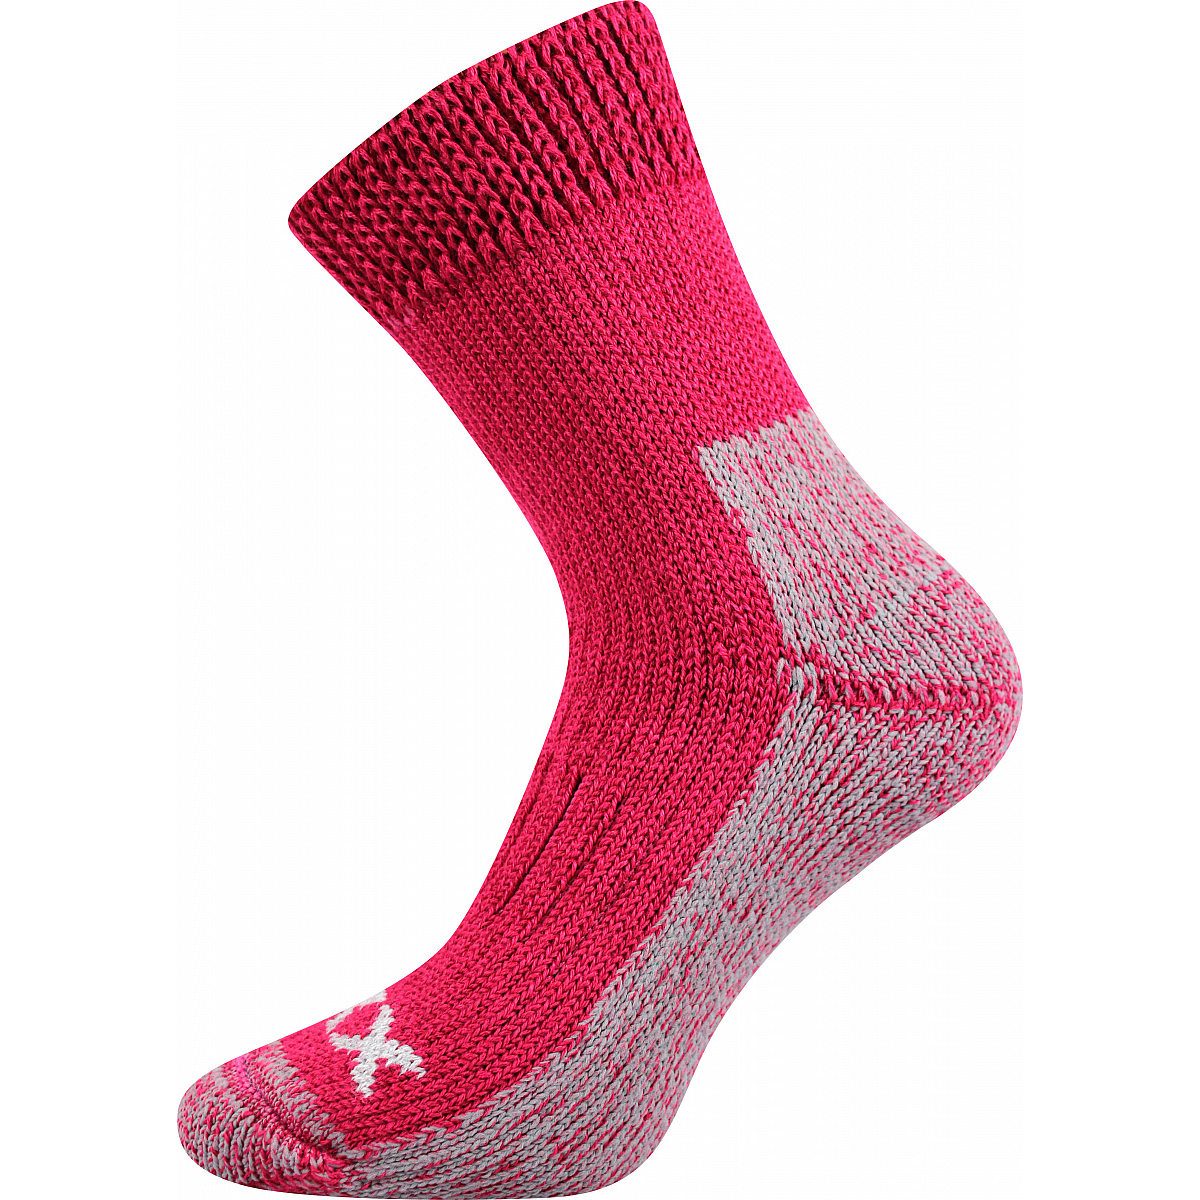 Extra teplé vlněné ponožky Voxx Alpin - růžové-šedé, 35-38